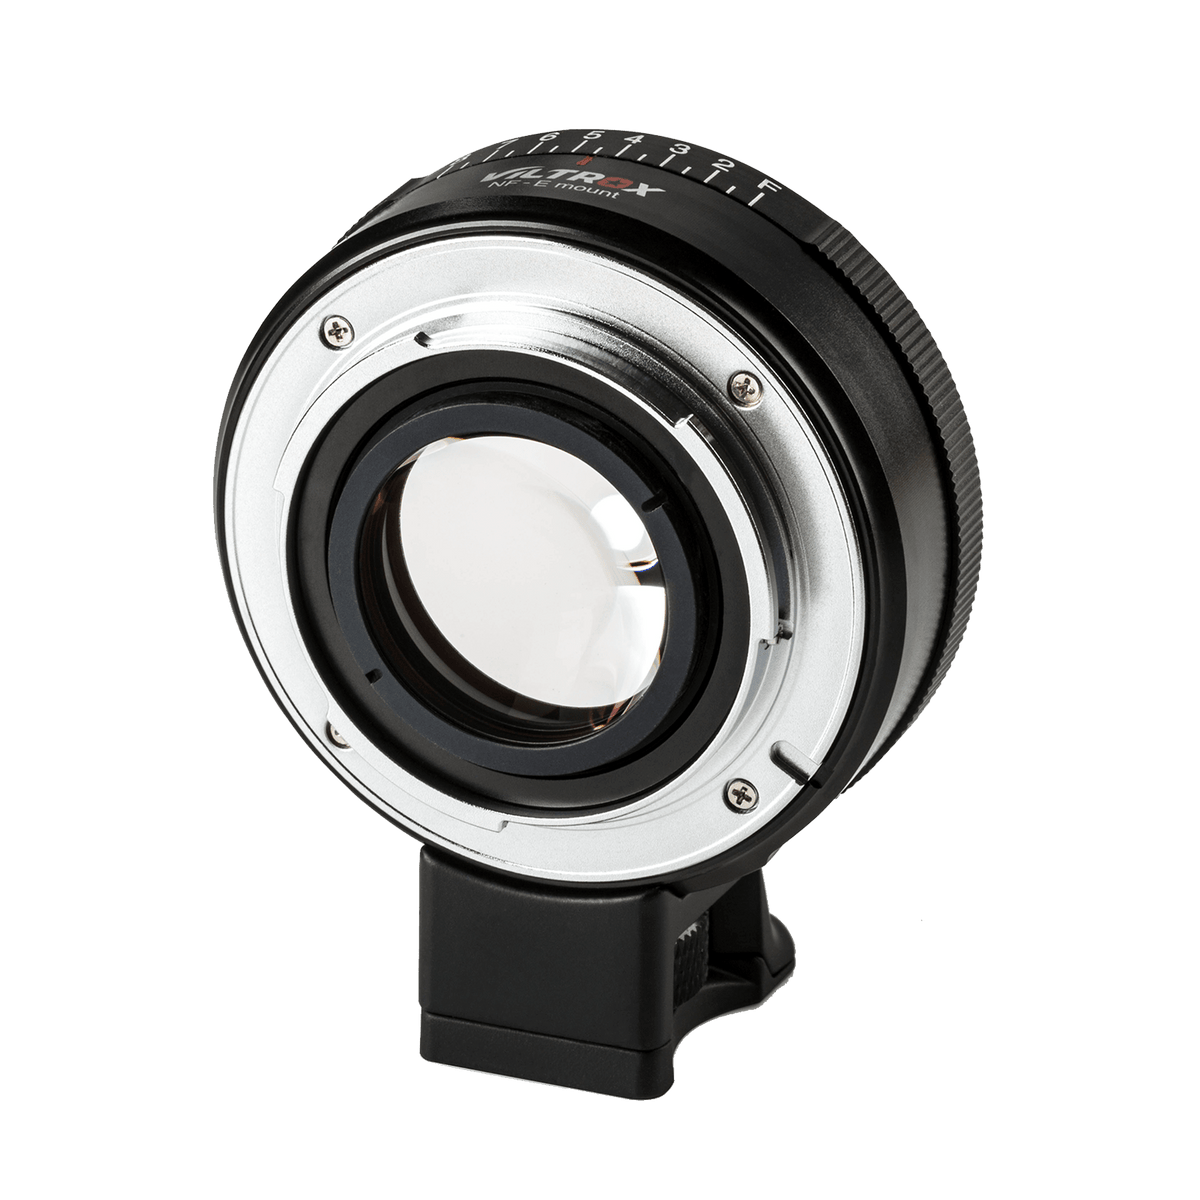 Rollei Objektive Viltrox NF-E Speedbooster für Nikon F-Objektive an Sony E-Mount